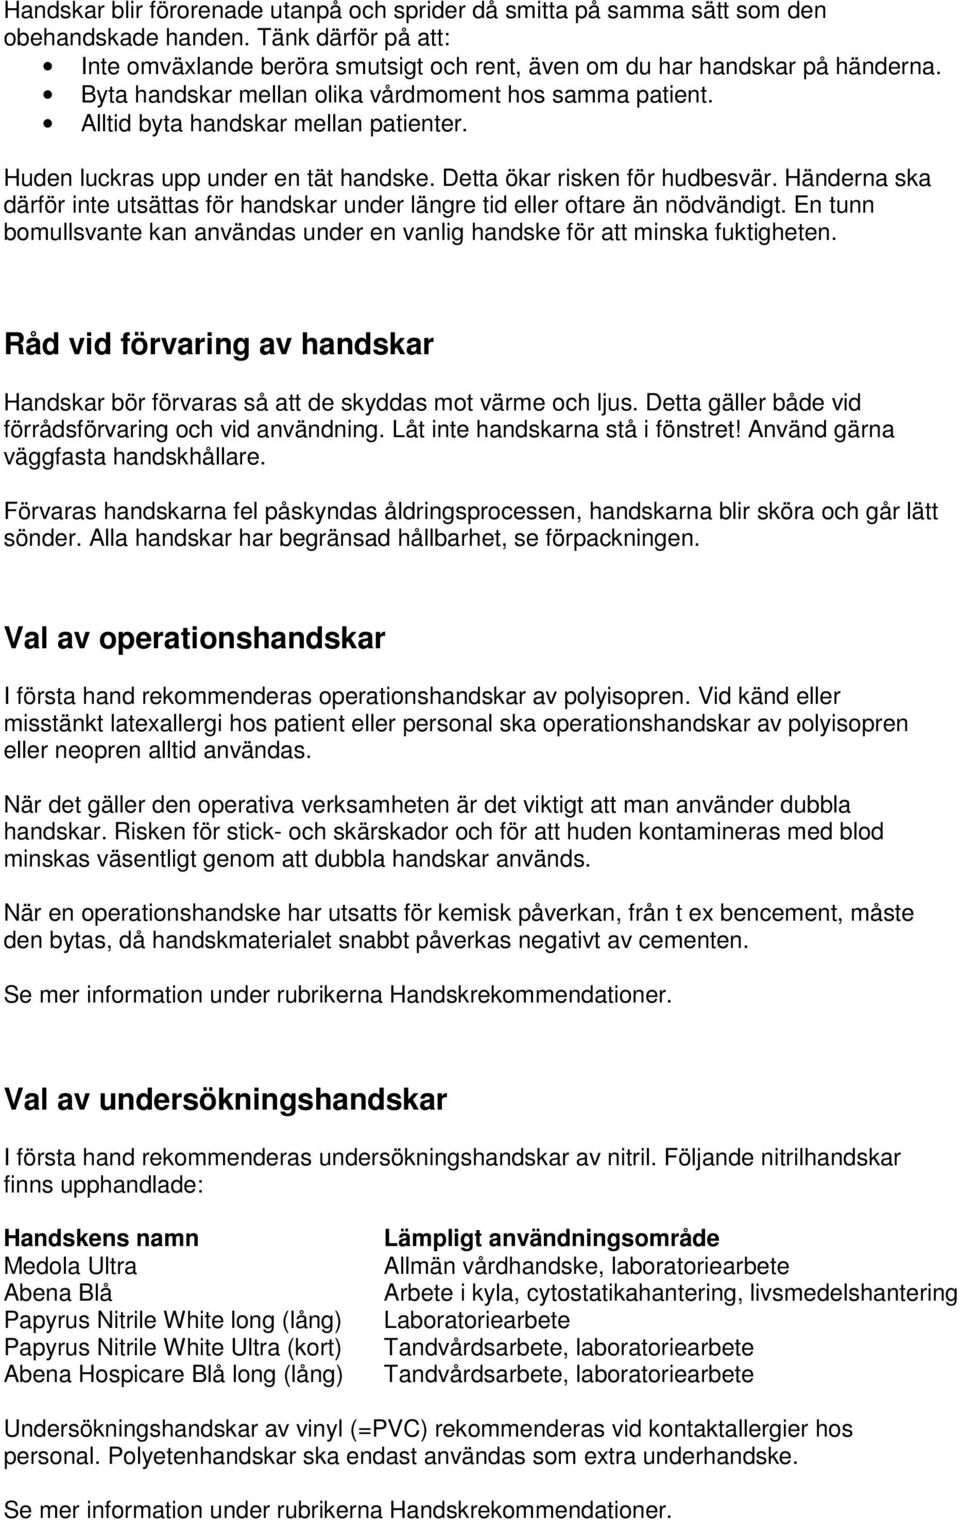 Rätt handske. Rekommendationer för val av handskar för personalen inom  landstingen i Dalarna, Sörmland, Västmanland samt Uppsala och Örebro län. -  PDF Free Download